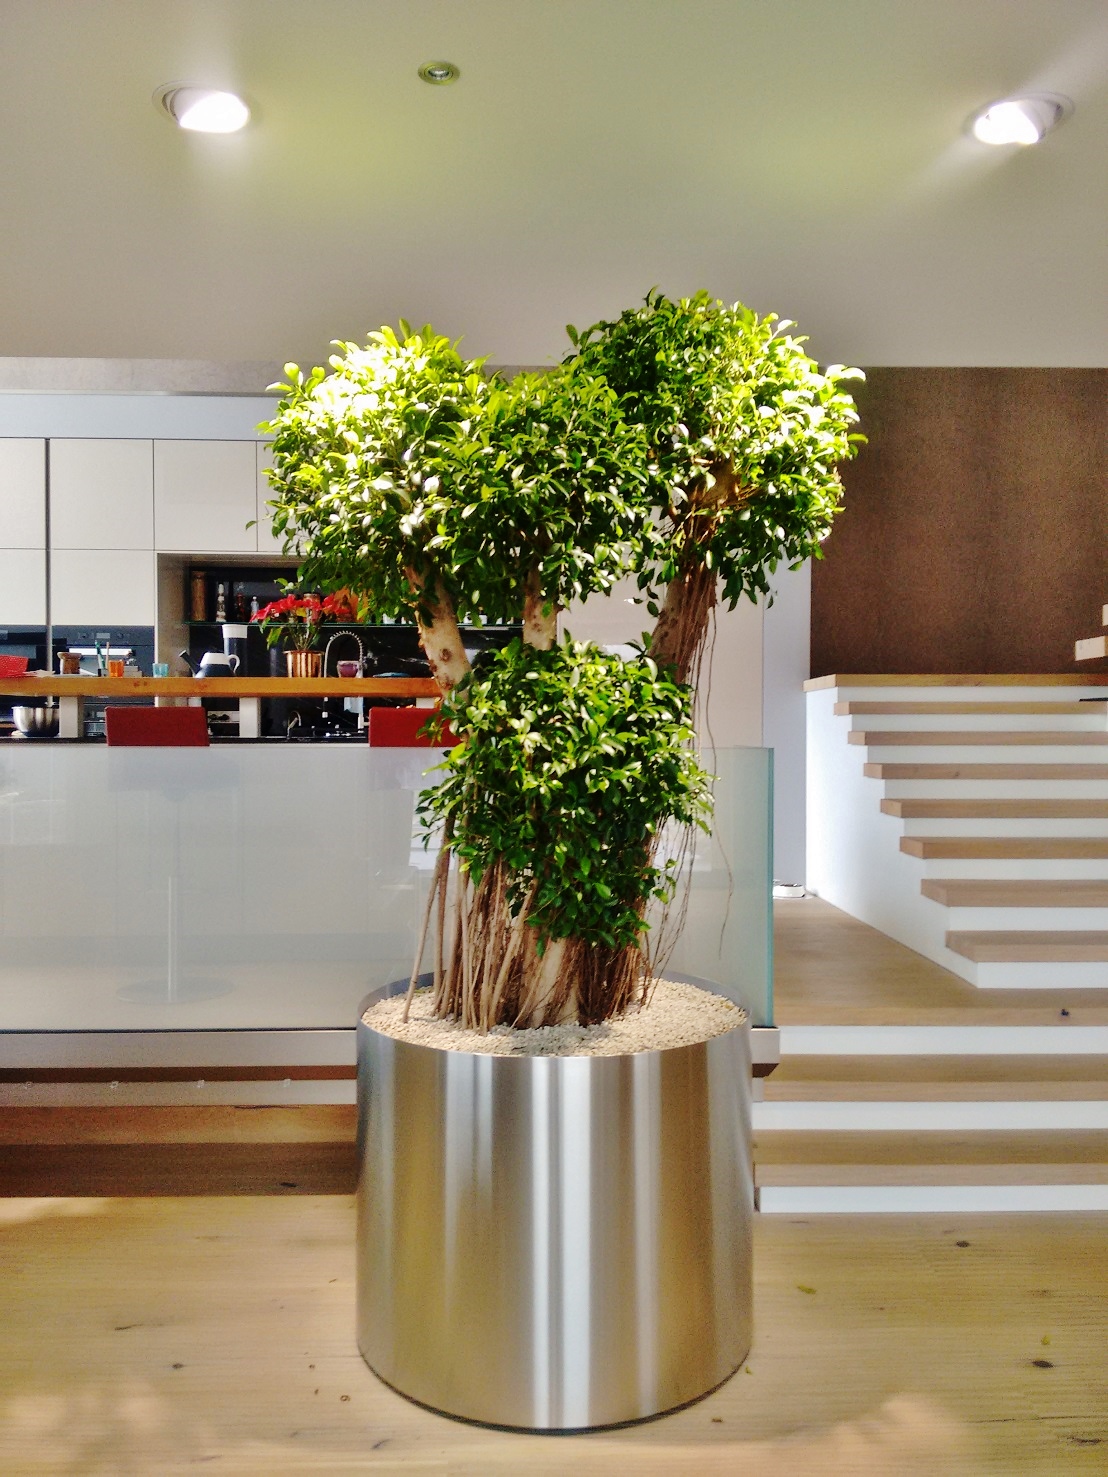 Ficus bonsai artig kaufen edelstahl kueche modern